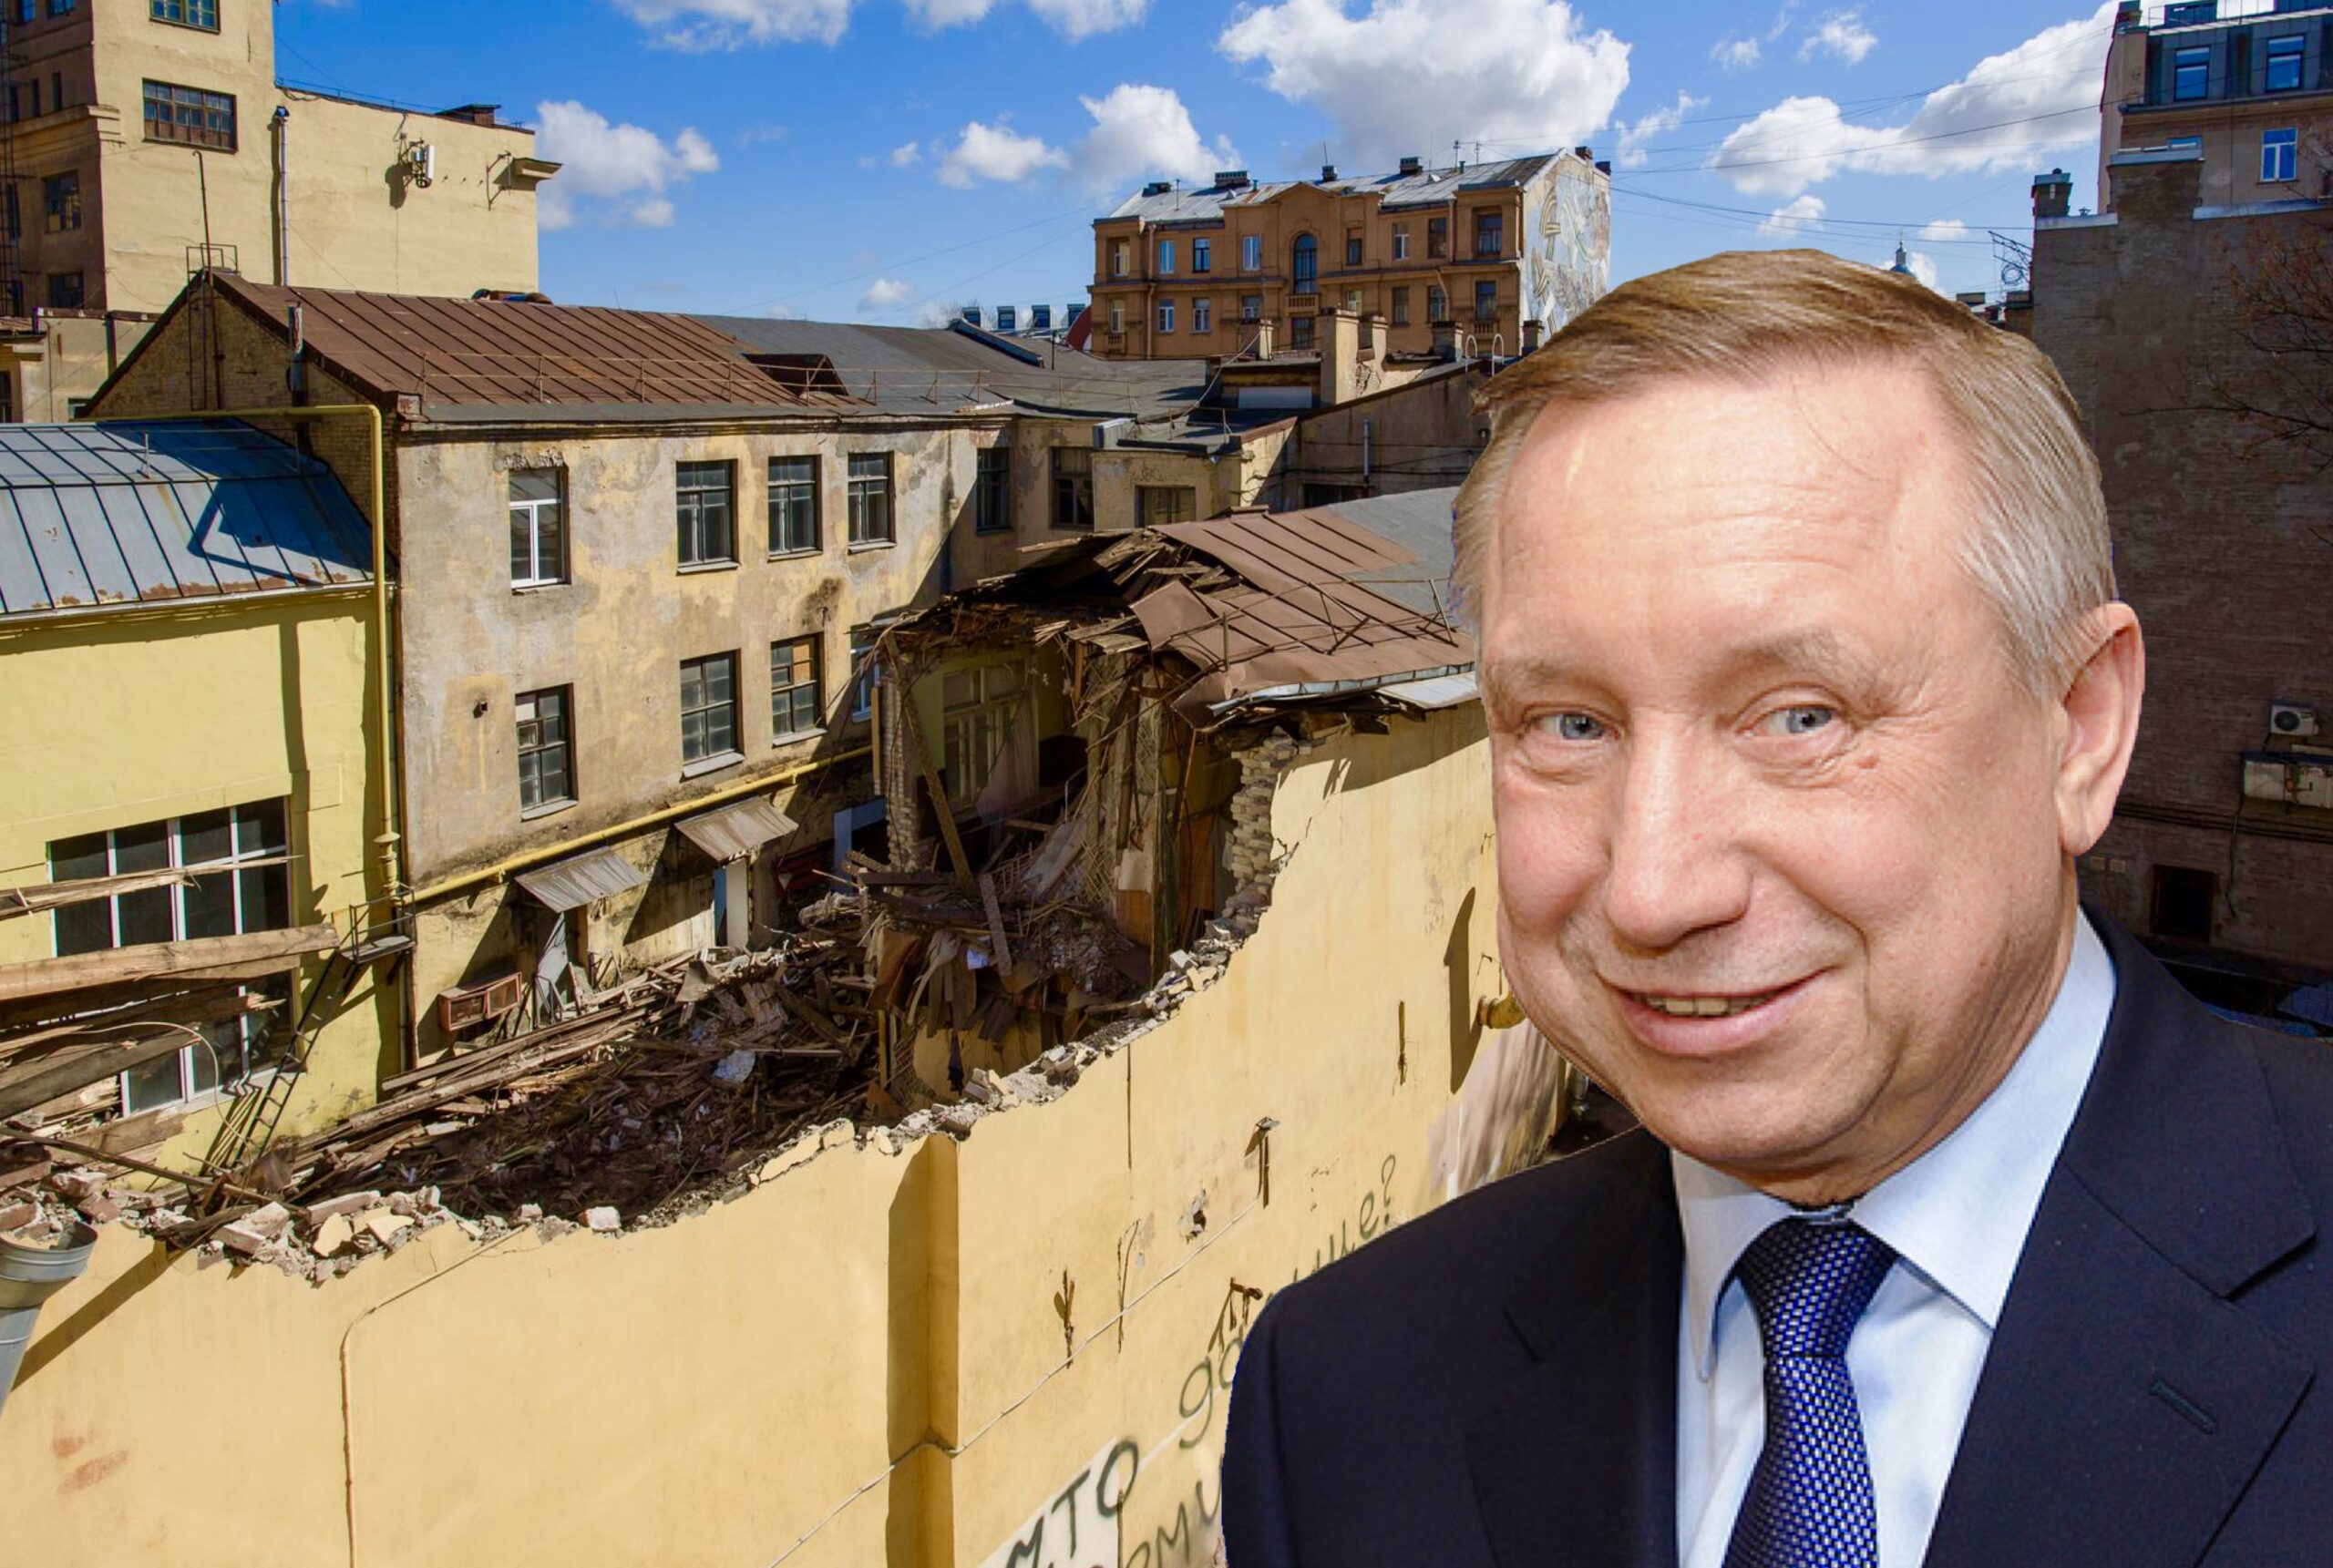 Беглов предпочел умолчать об обрушениях и сносе исторических зданий Петербурга в отчете о развитии города 